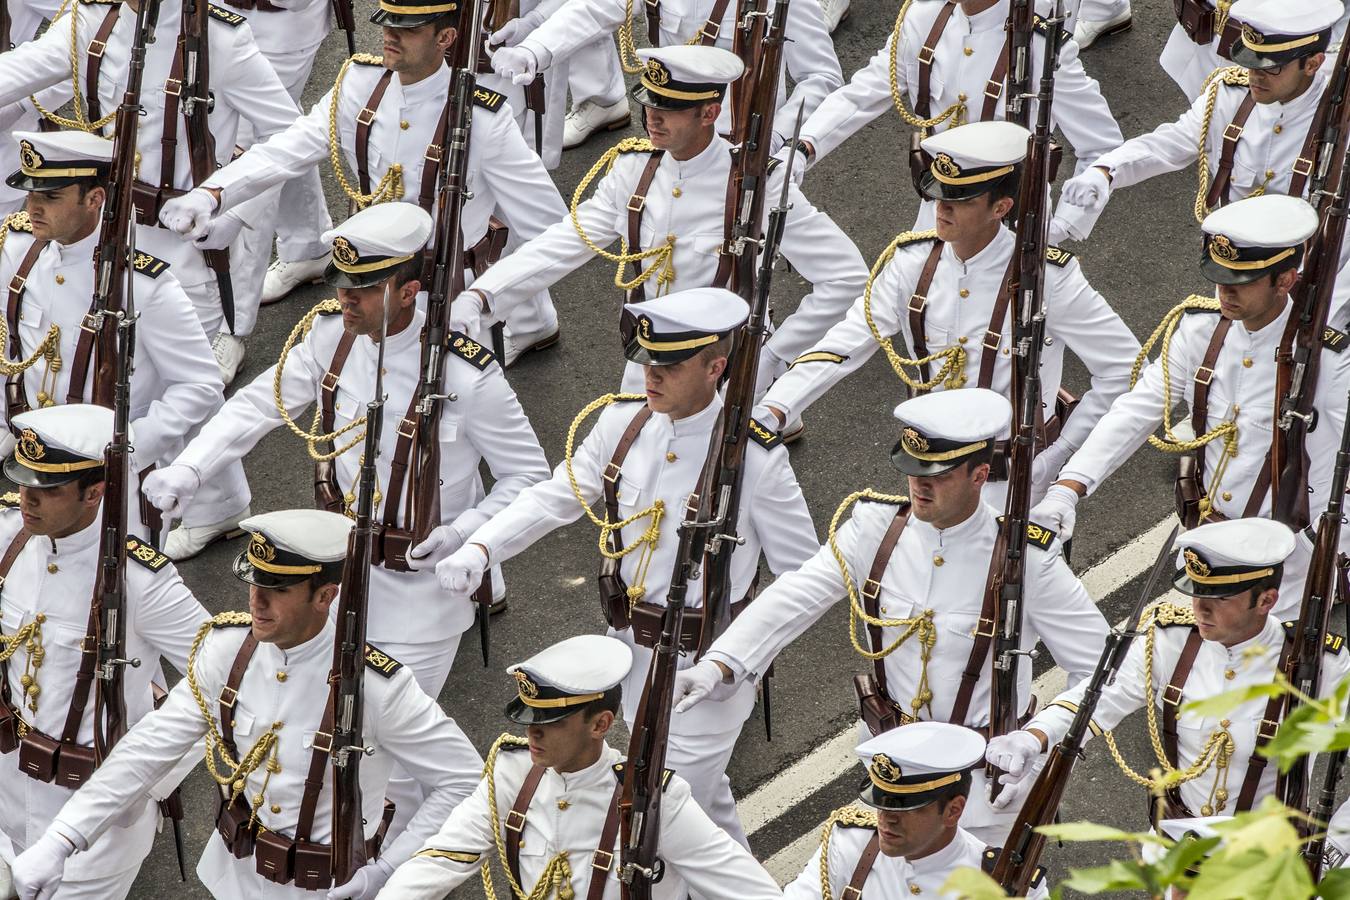 Los Reyes de España presidieron en Logroño el Desfile del Día de las Fuezas Armadas, que reunió a miles de asistentes.